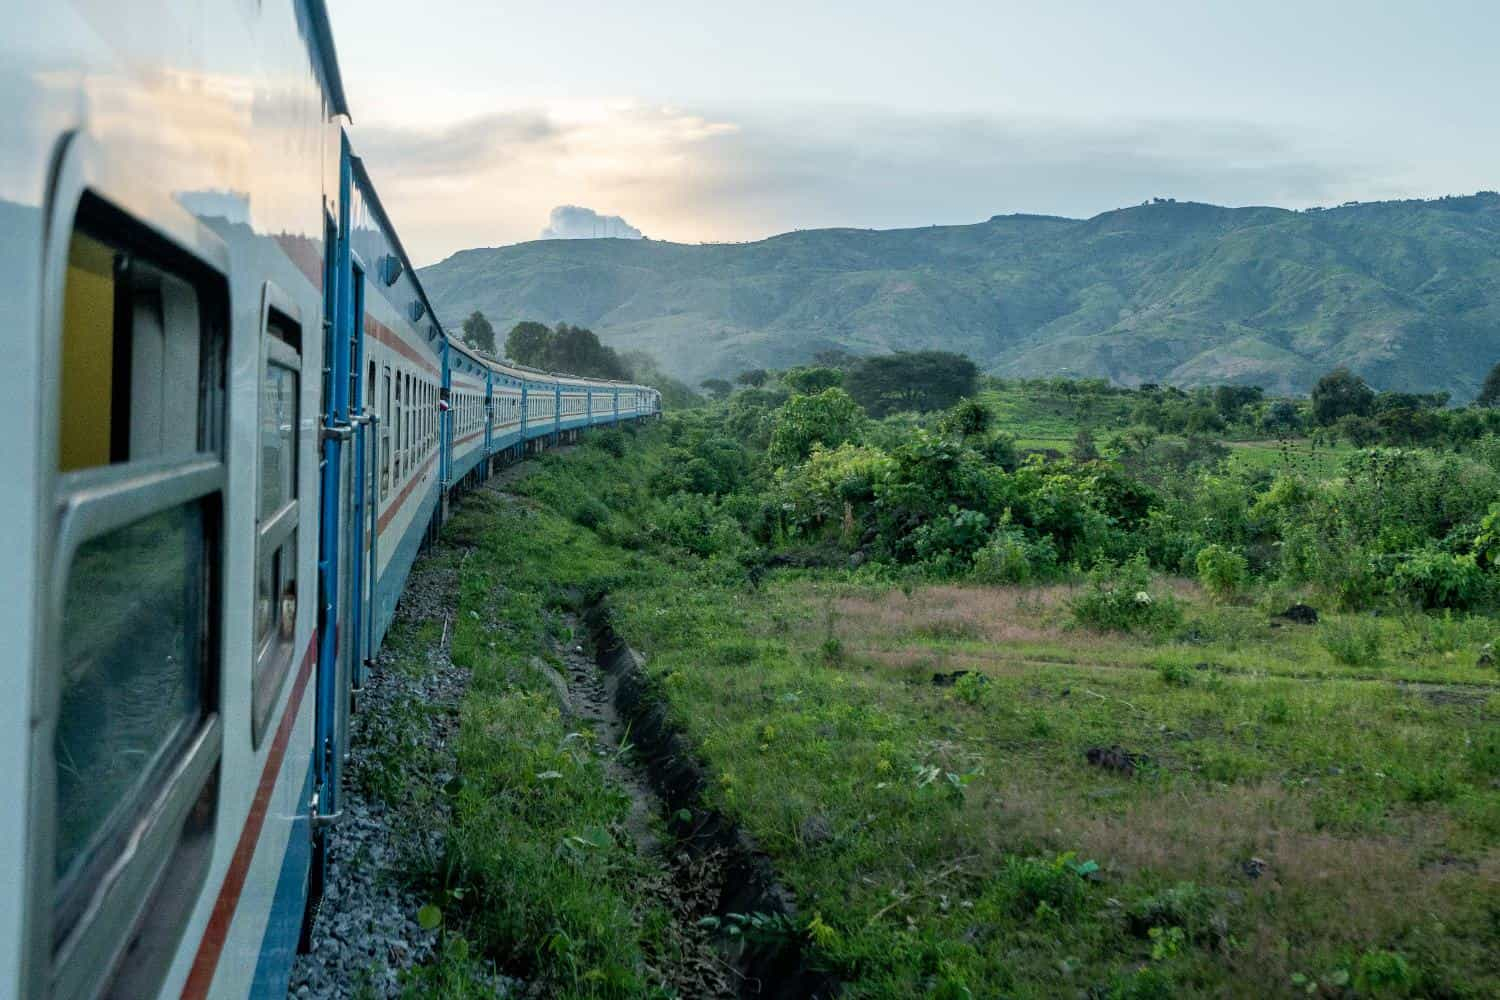 Sunset-Zambia-Tazaara-Train-min